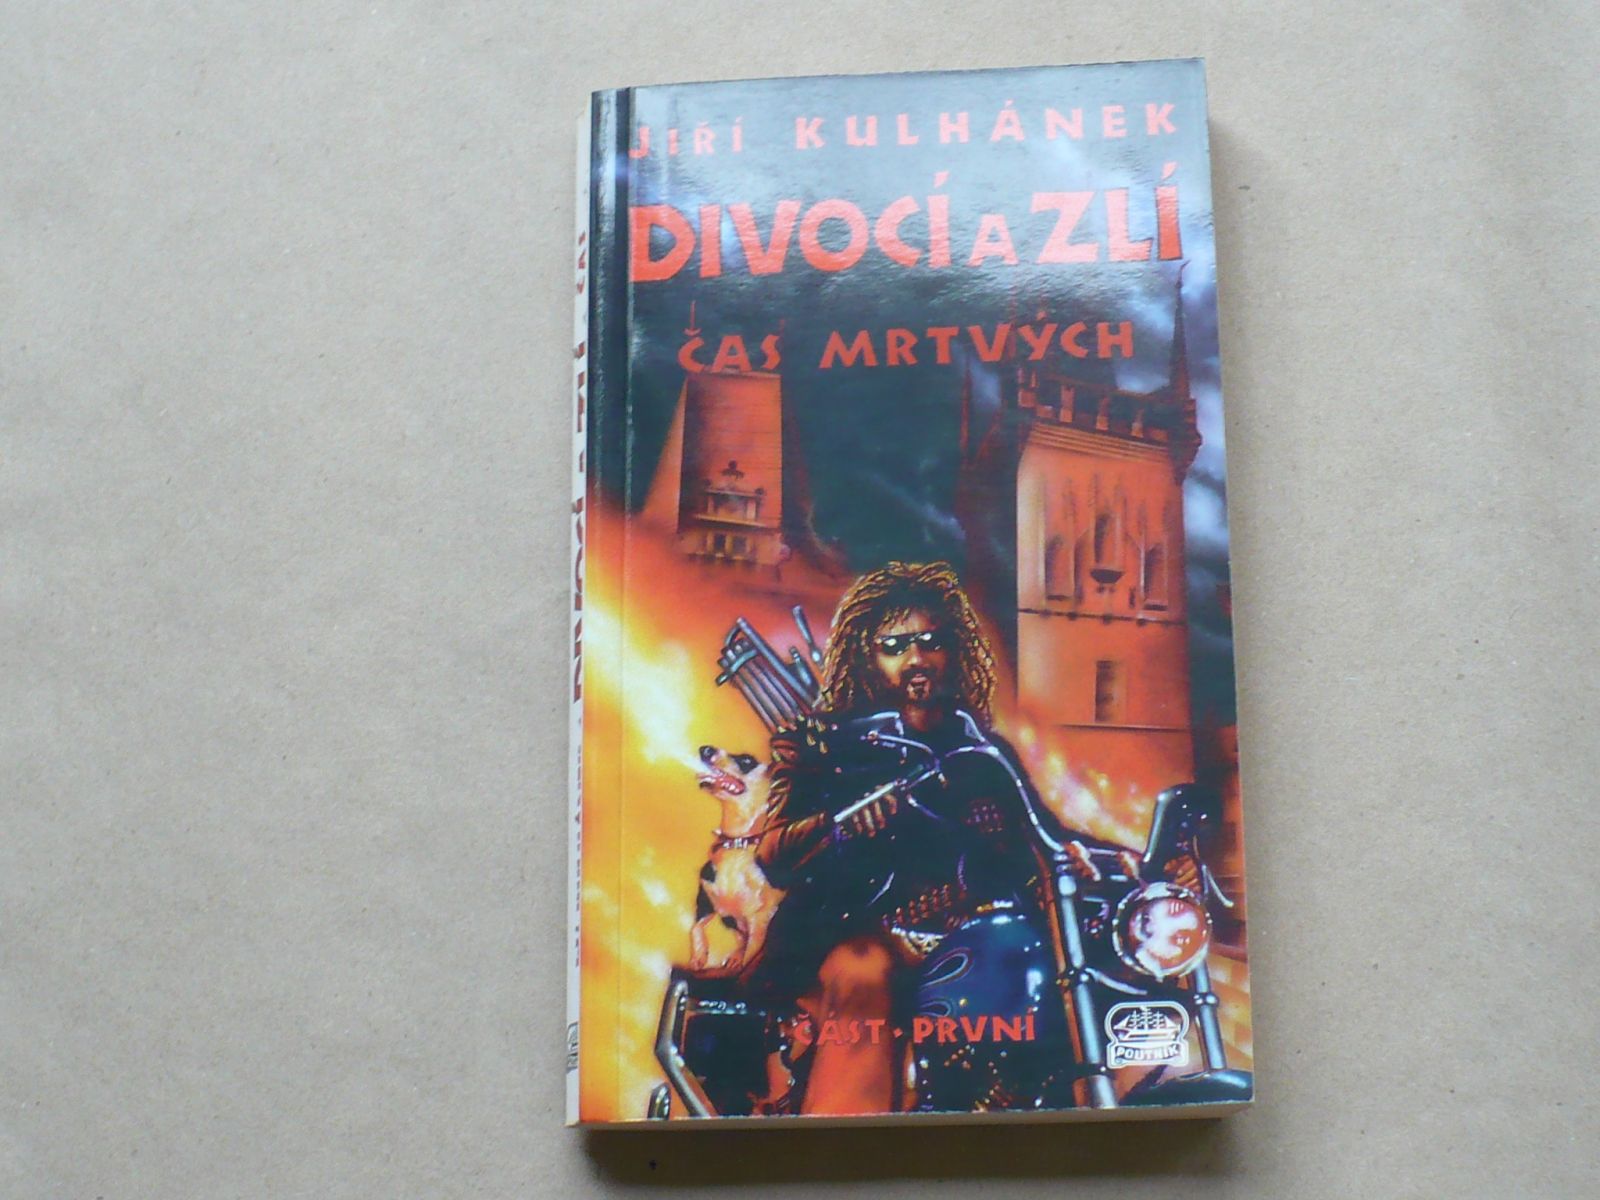 Jiří Kulhánek - Divocí a zlí - Čas mrtvých (1999) část první